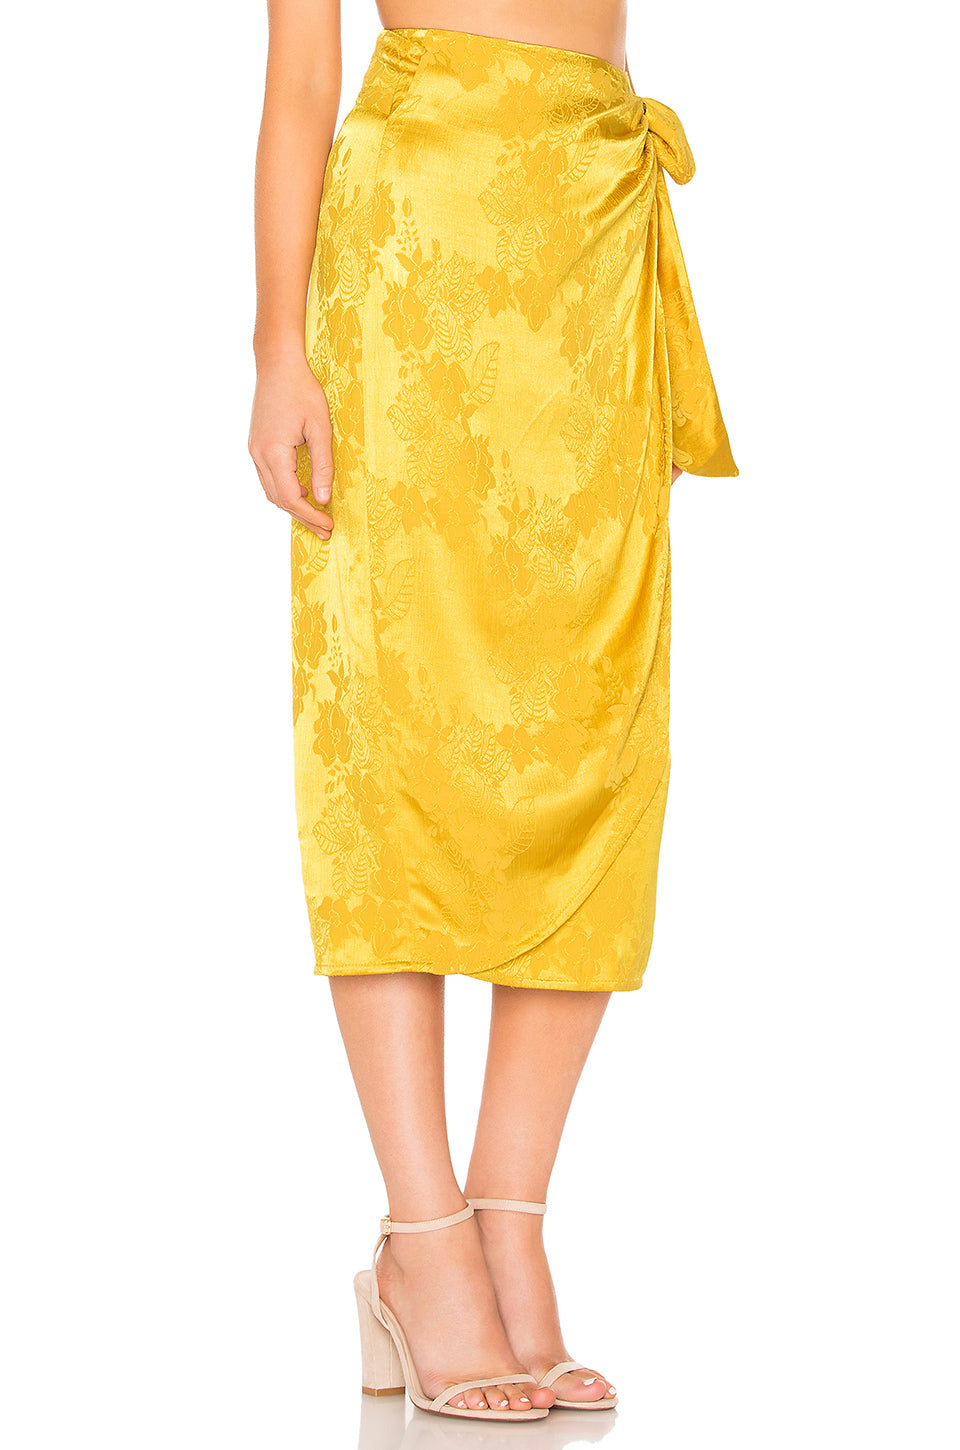 Arizona Skirt in GOLDEN YELLOW